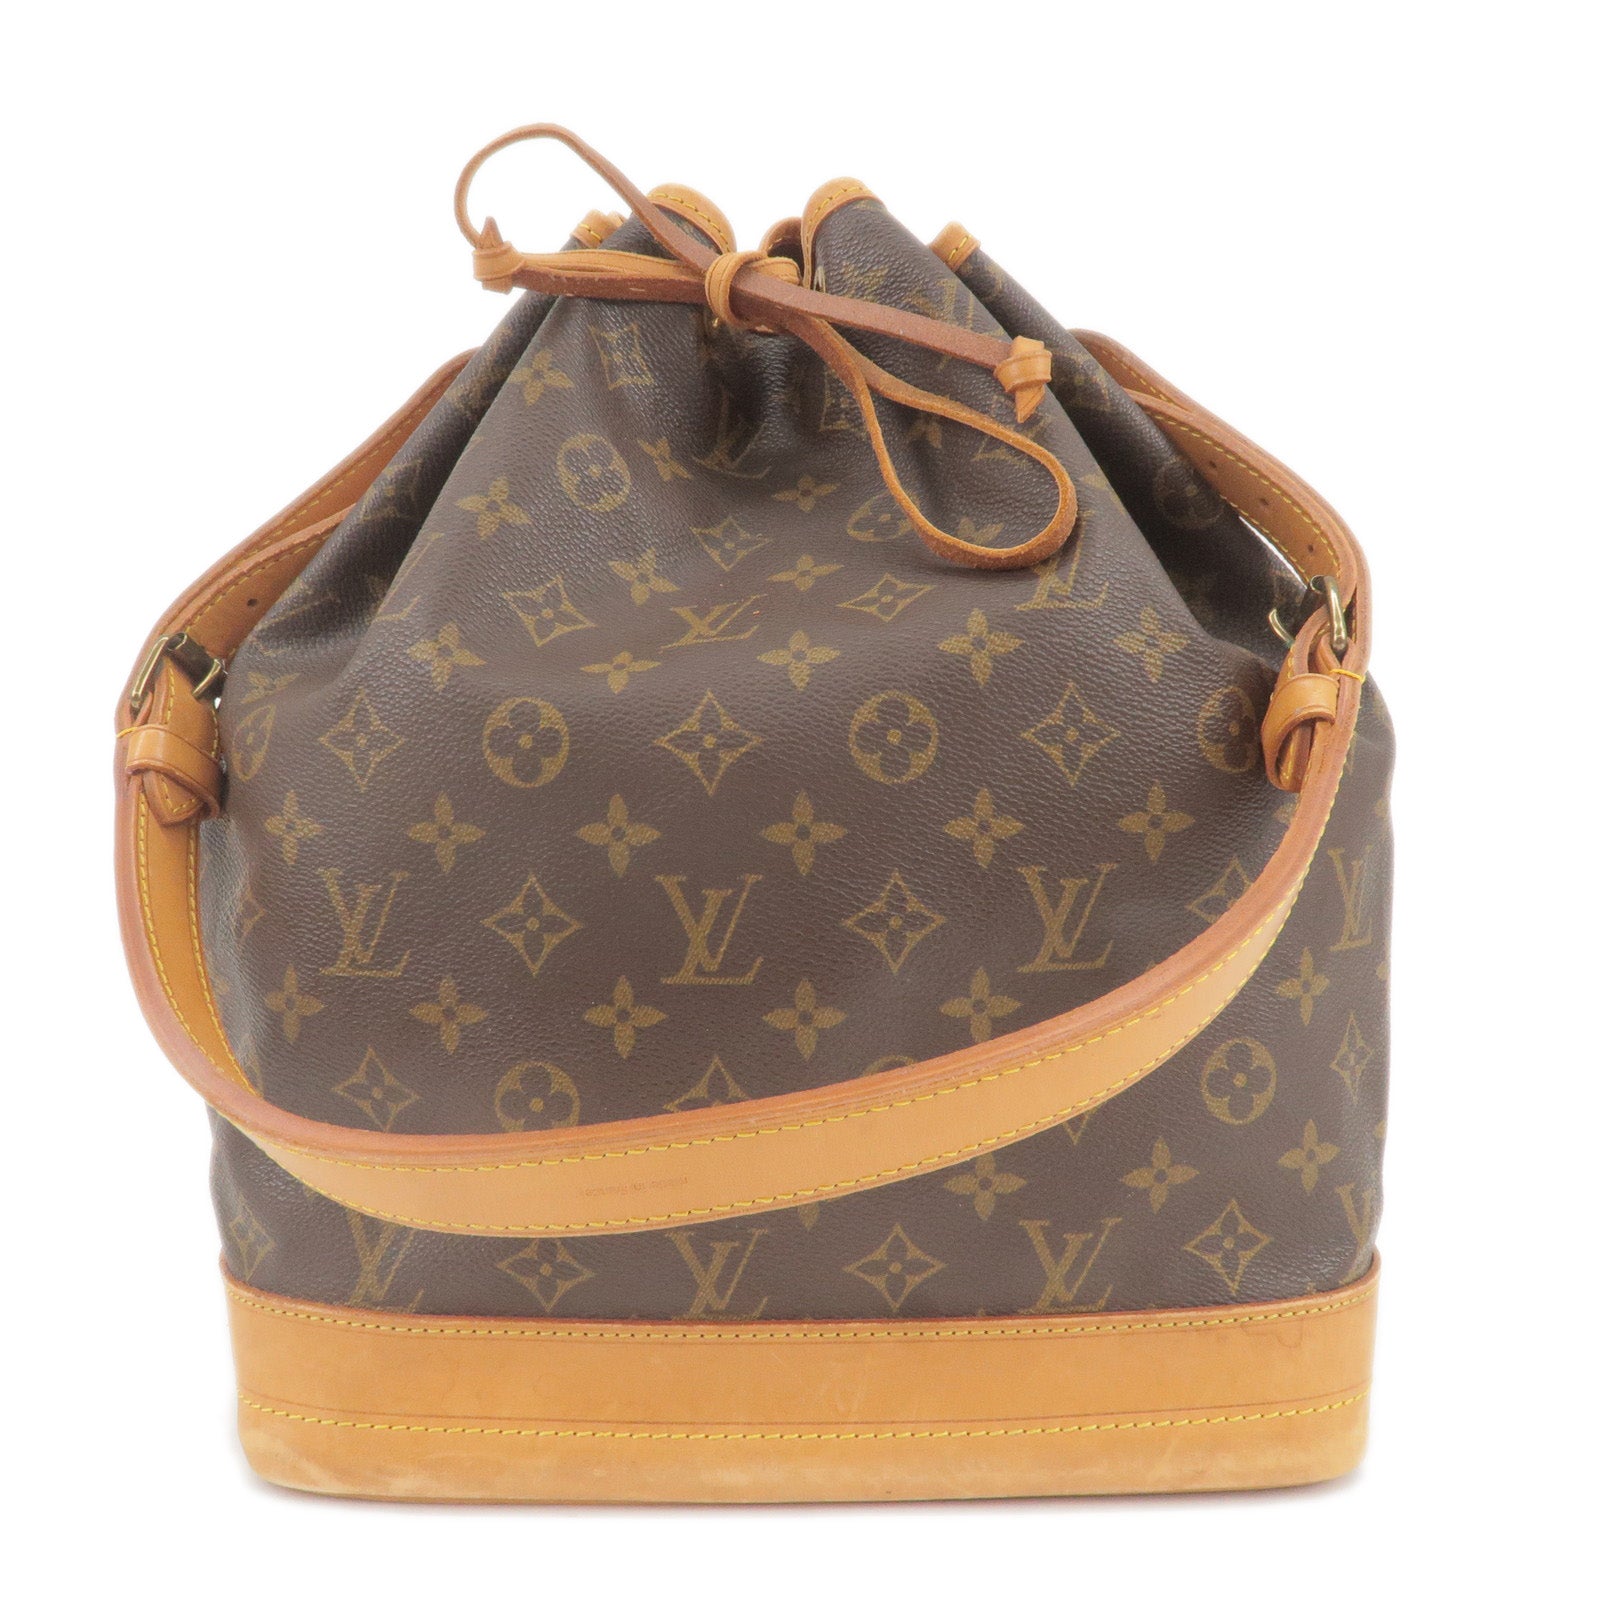 Louis Vuitton Brooklyn Bum Bag in Brown